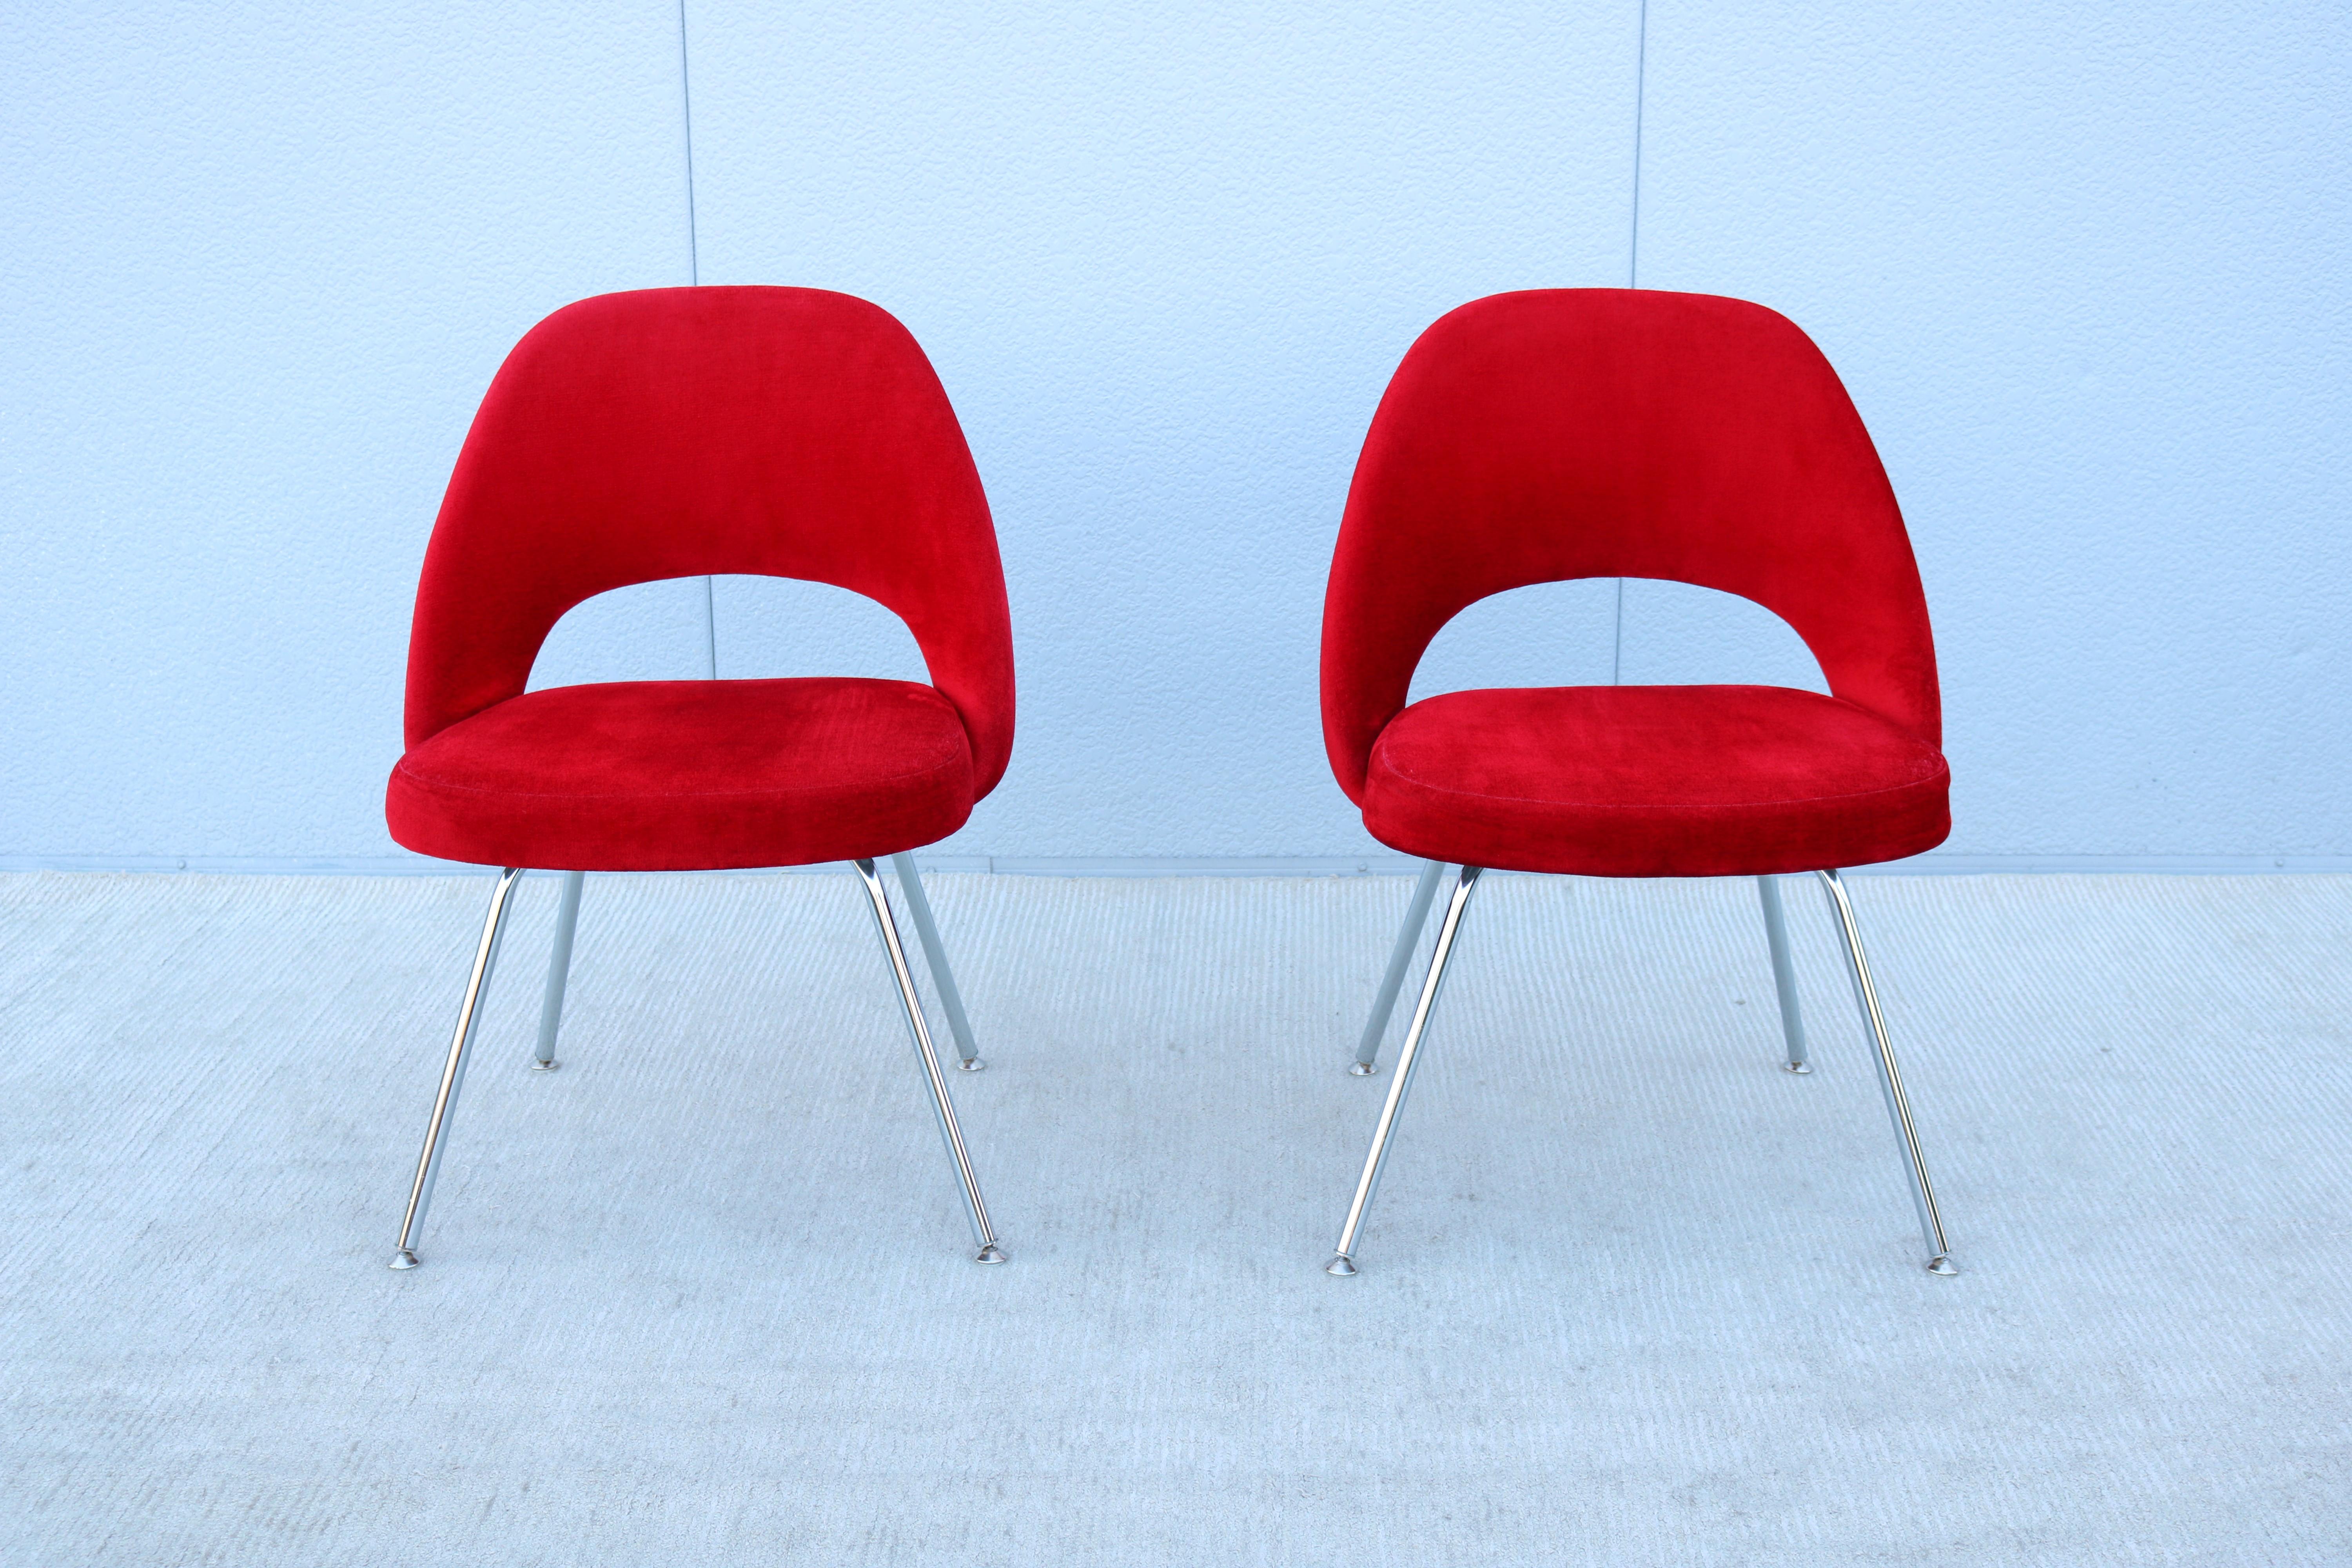 Superbe paire de fauteuils de direction sans accoudoirs Saarinen de Knoll, authentiquement moderne du milieu du siècle dernier.
L'un des designs les plus populaires de Knoll qui a atteint un confort suprême grâce à la forme de sa coque.
Il a été